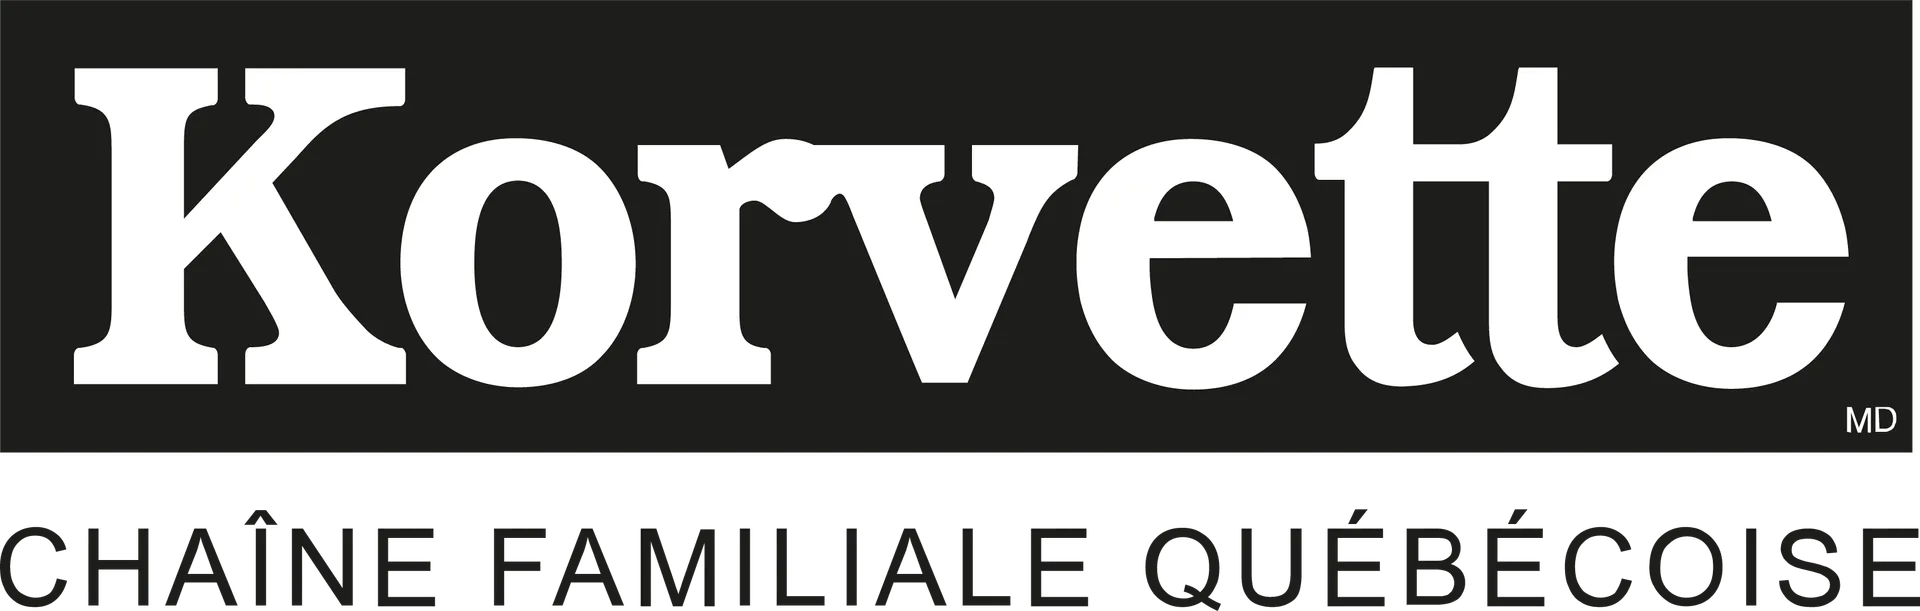 KORVETTE logo